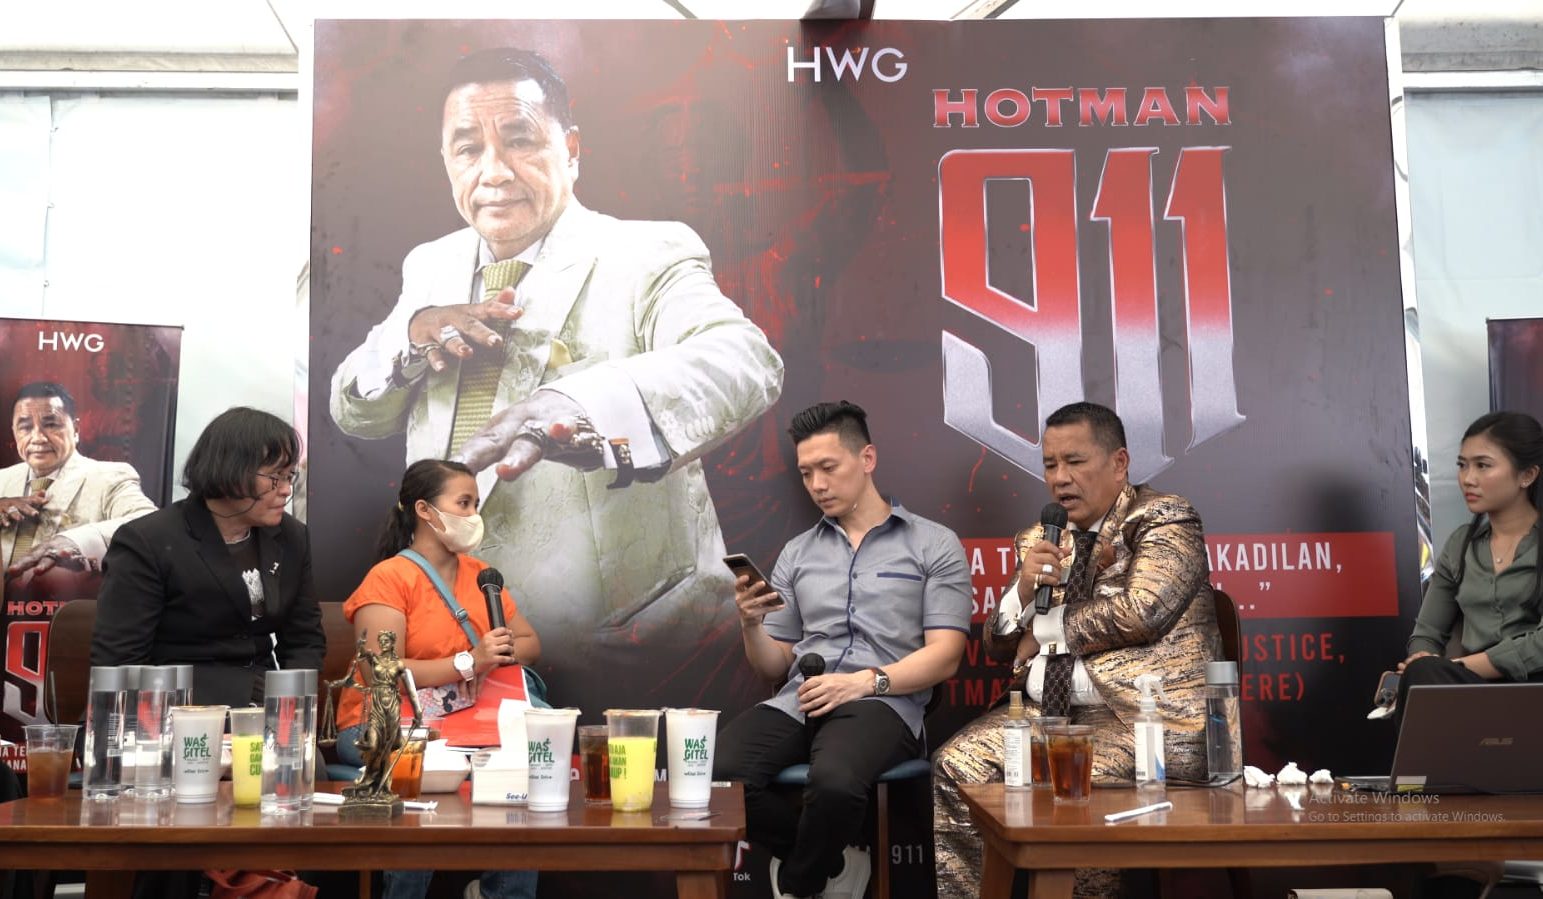 HWG Group Sponsori Hotman Paris Beri Konsultasi dan Pelajaran Hukum Gratis Bagi Warga Bandung